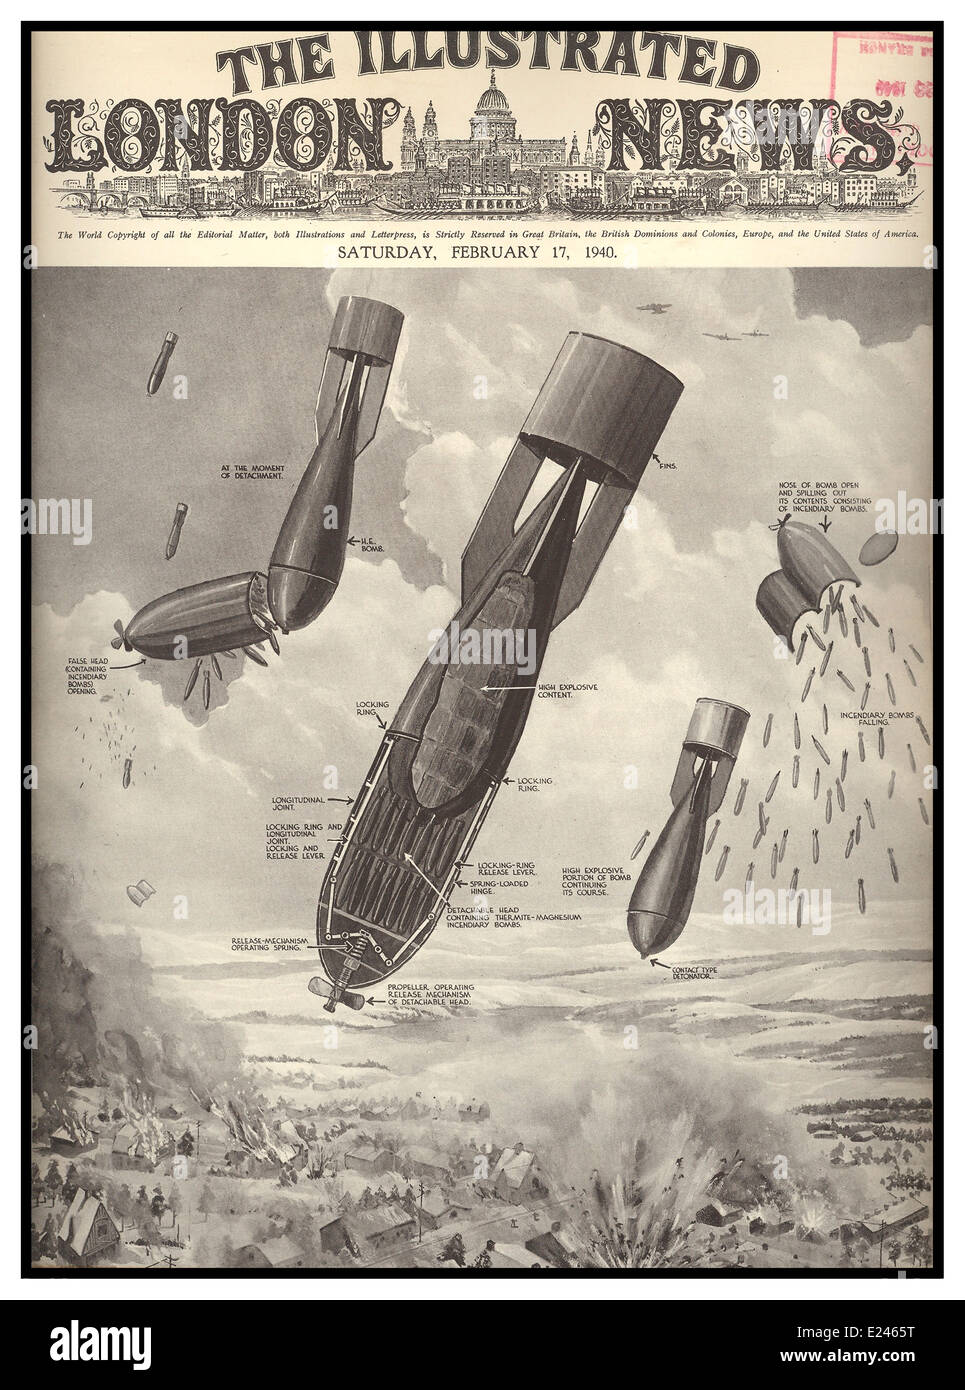 LONDON BLITZ NACHRICHTEN BOMBEN 17 Februar 1940 Cover der Illustrated London News zeigt das Innenleben von deutschen Bomben in London regnet Stockfoto